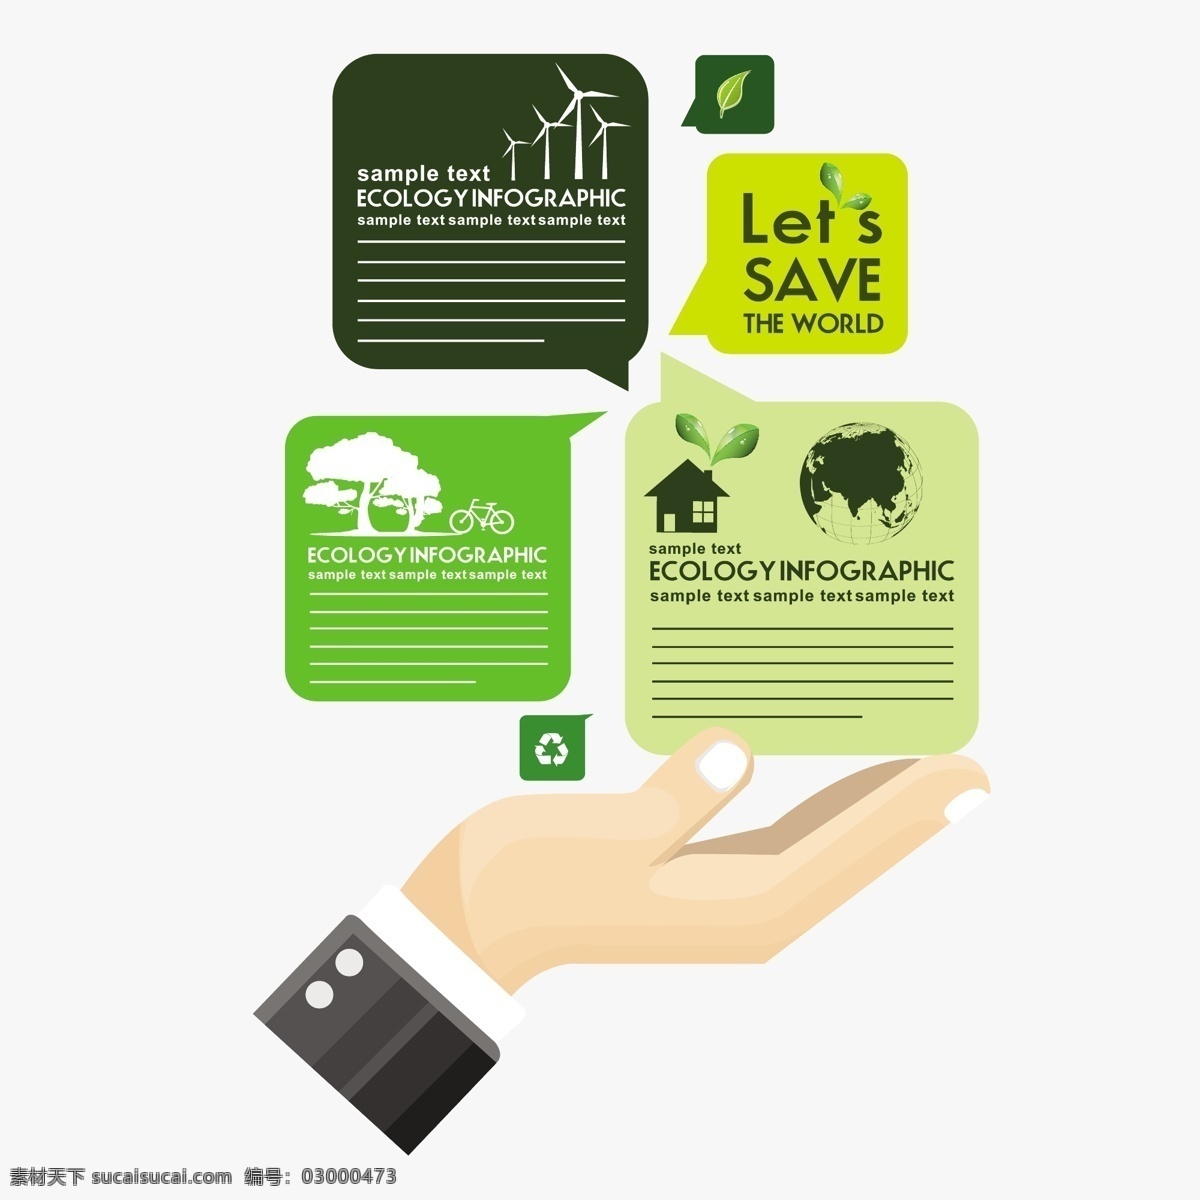 生态信息图表 环保 创意设计 eco 绿色 风车 循环 能源 节能 低碳 生态 回收 环保标志 ppt素材 底纹背景 矢量 商务金融 商业插画 白色